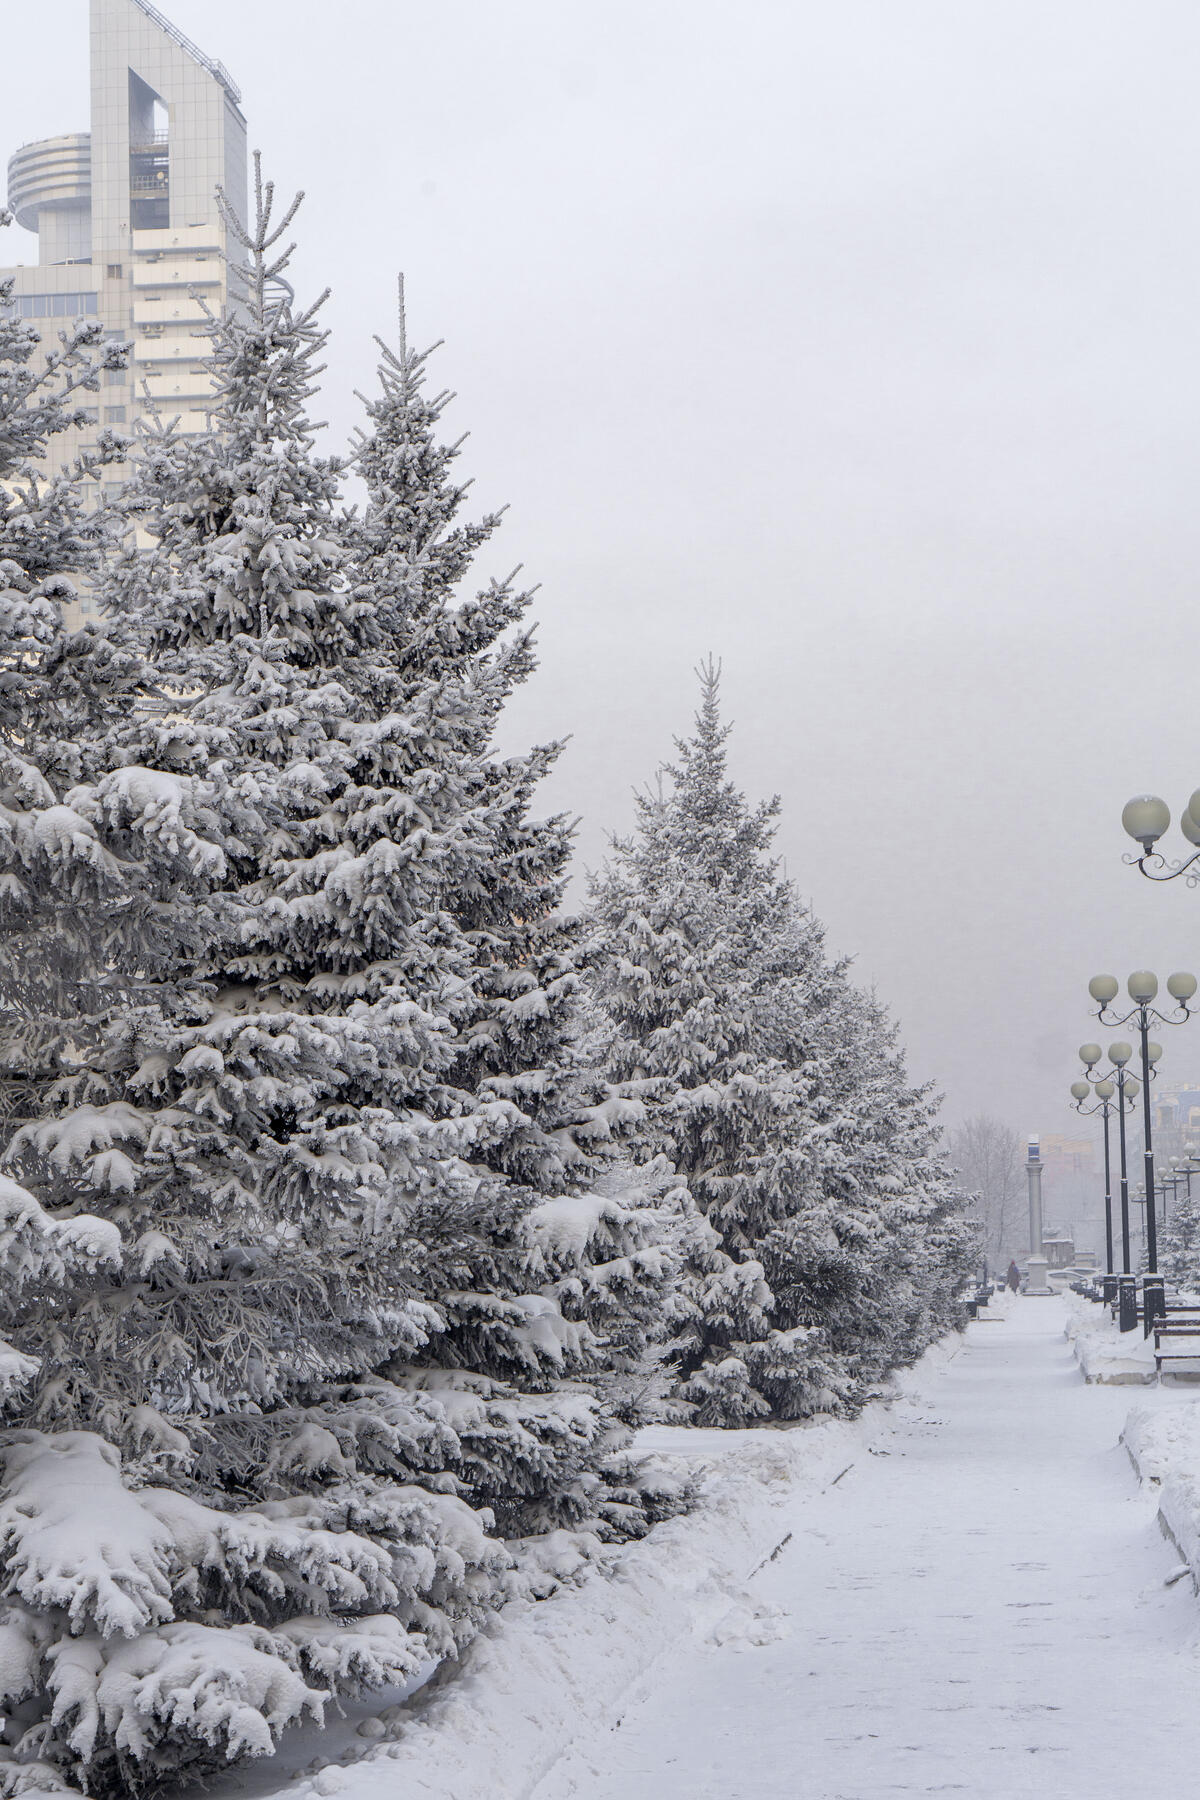 Елки покрытые снегом в парке зимой